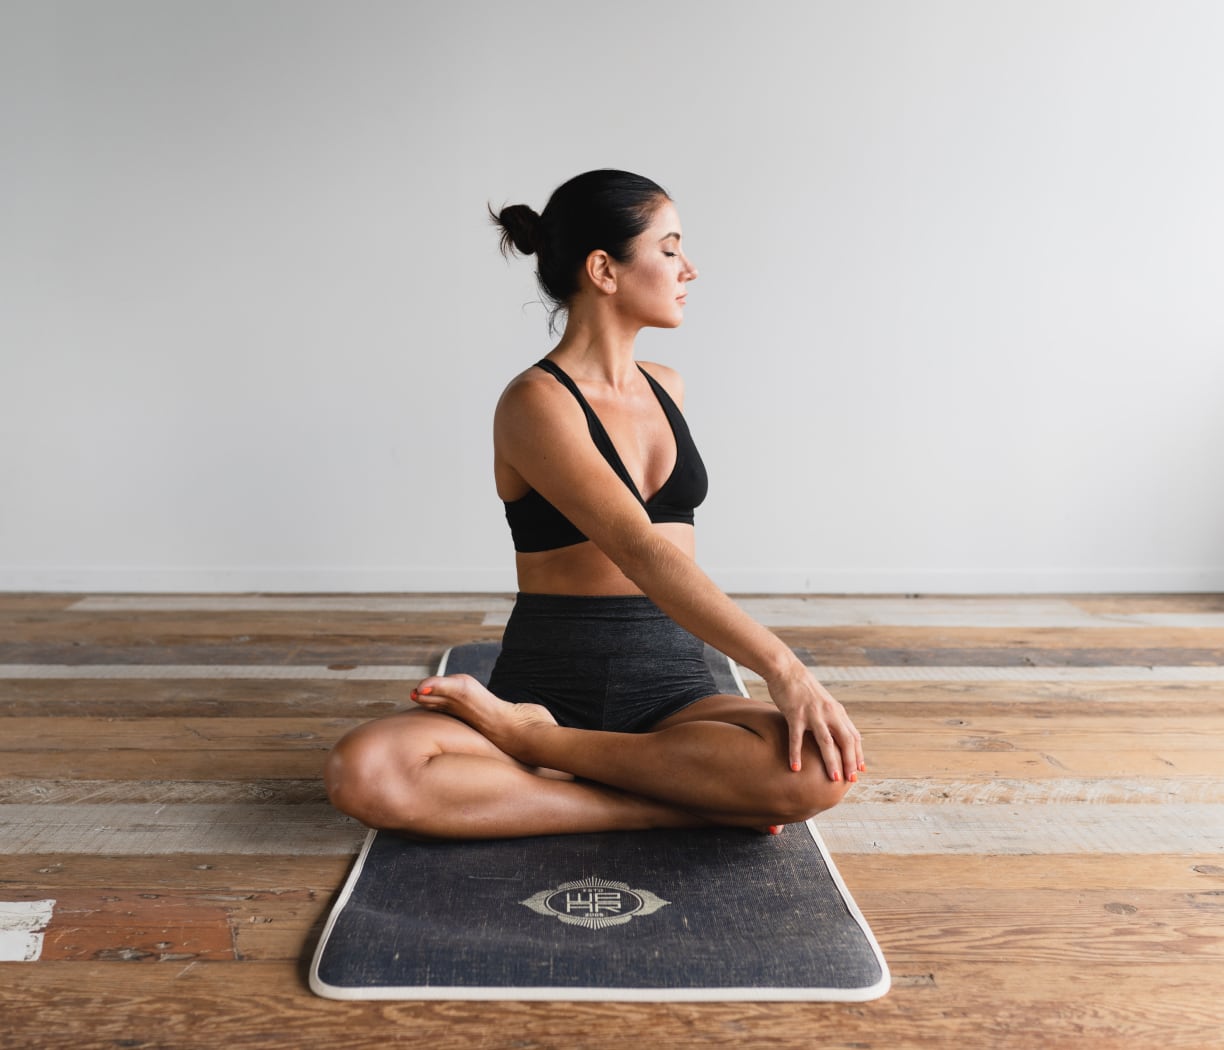 seguro de responsabilidad civil para yoga, pilates y meditacion